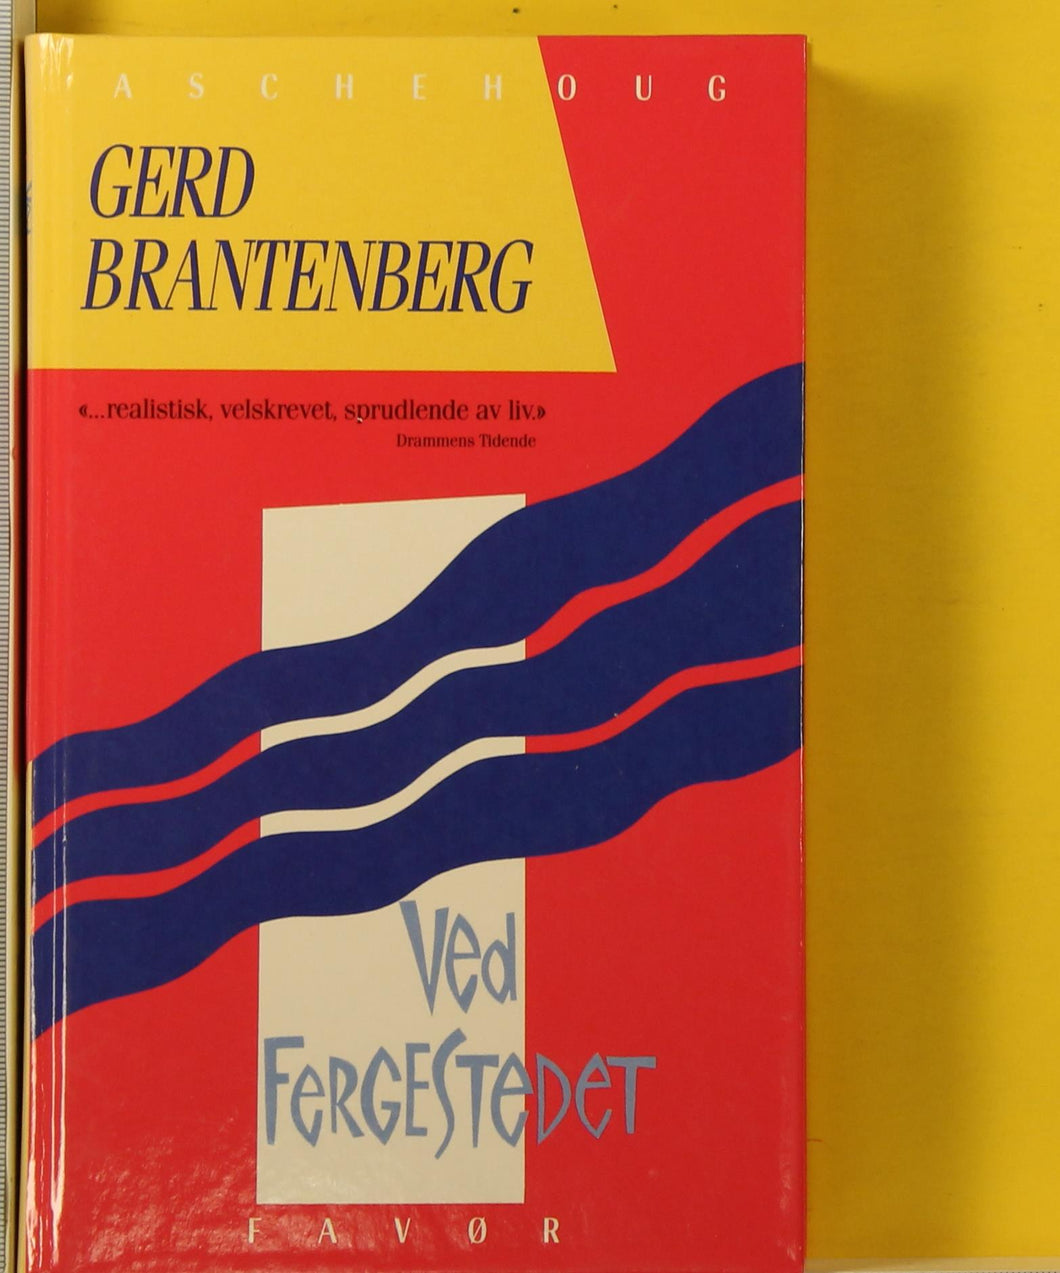 Ved fergestedet  : skjebner om en skole (1955-60). Gerd Brantenberg